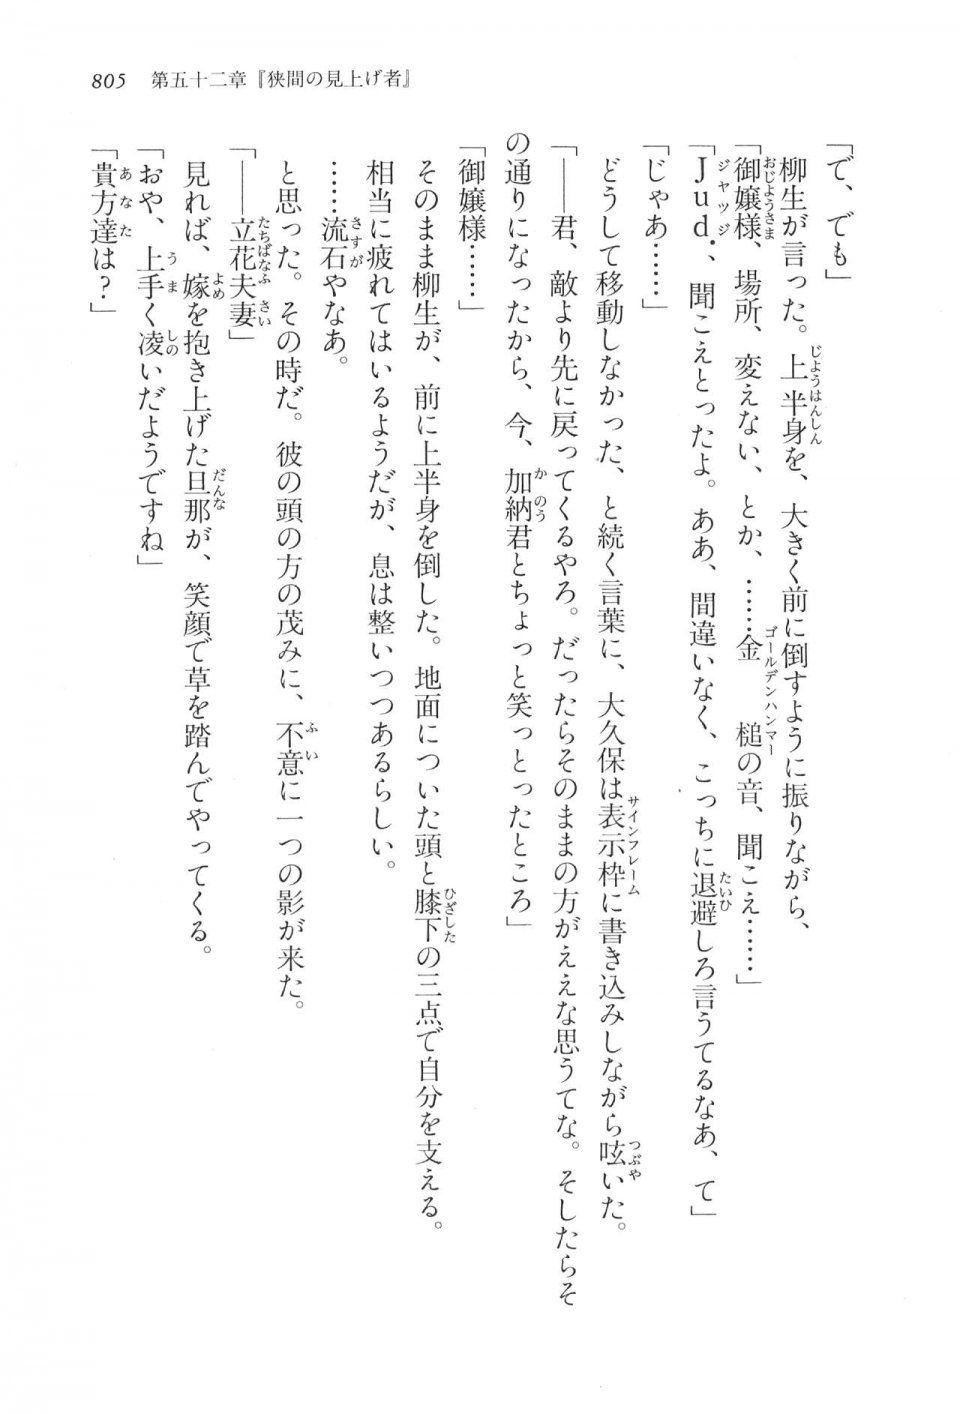 Kyoukai Senjou no Horizon LN Vol 17(7B) - Photo #807